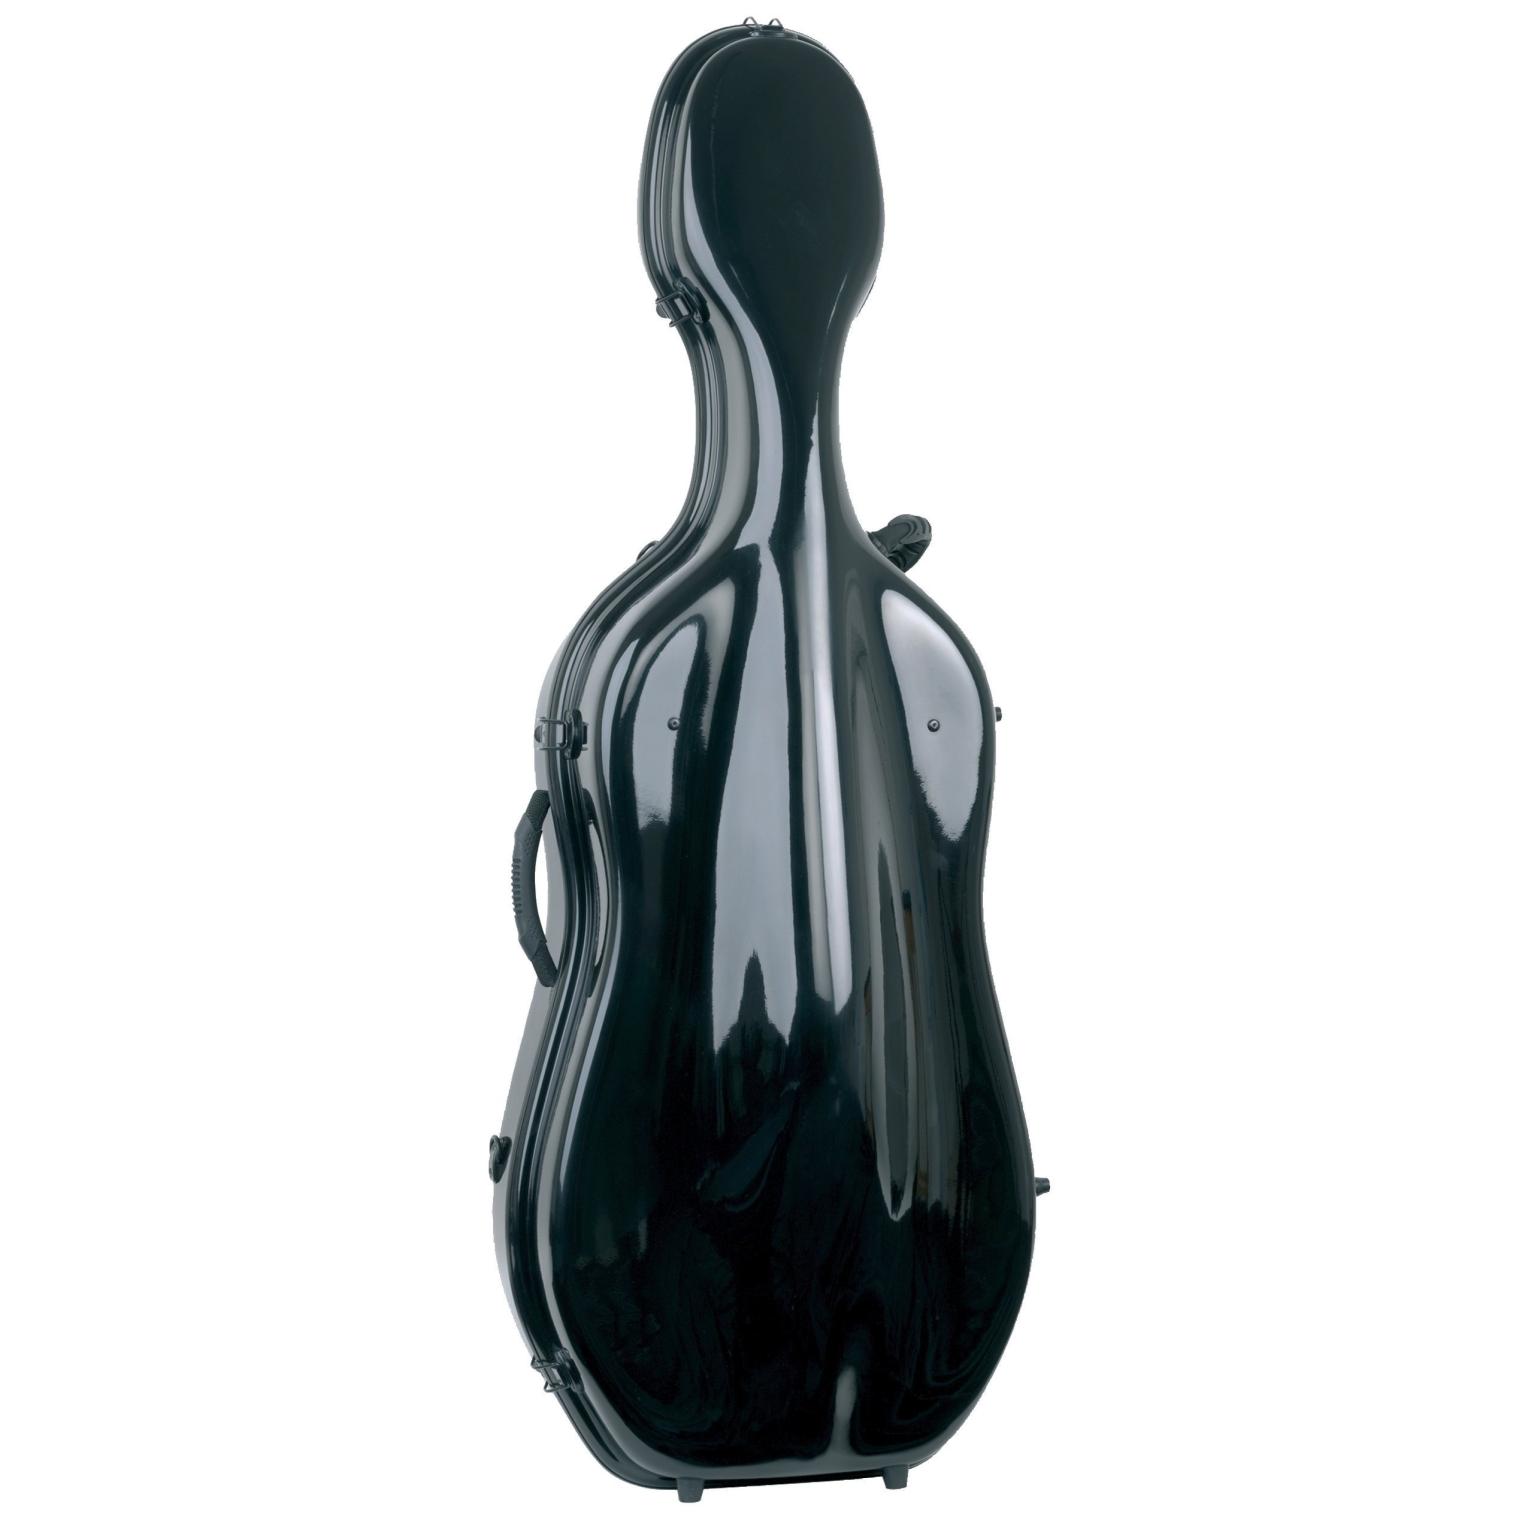 GEWA Made in Germany Cello case Idea Futura Black/red